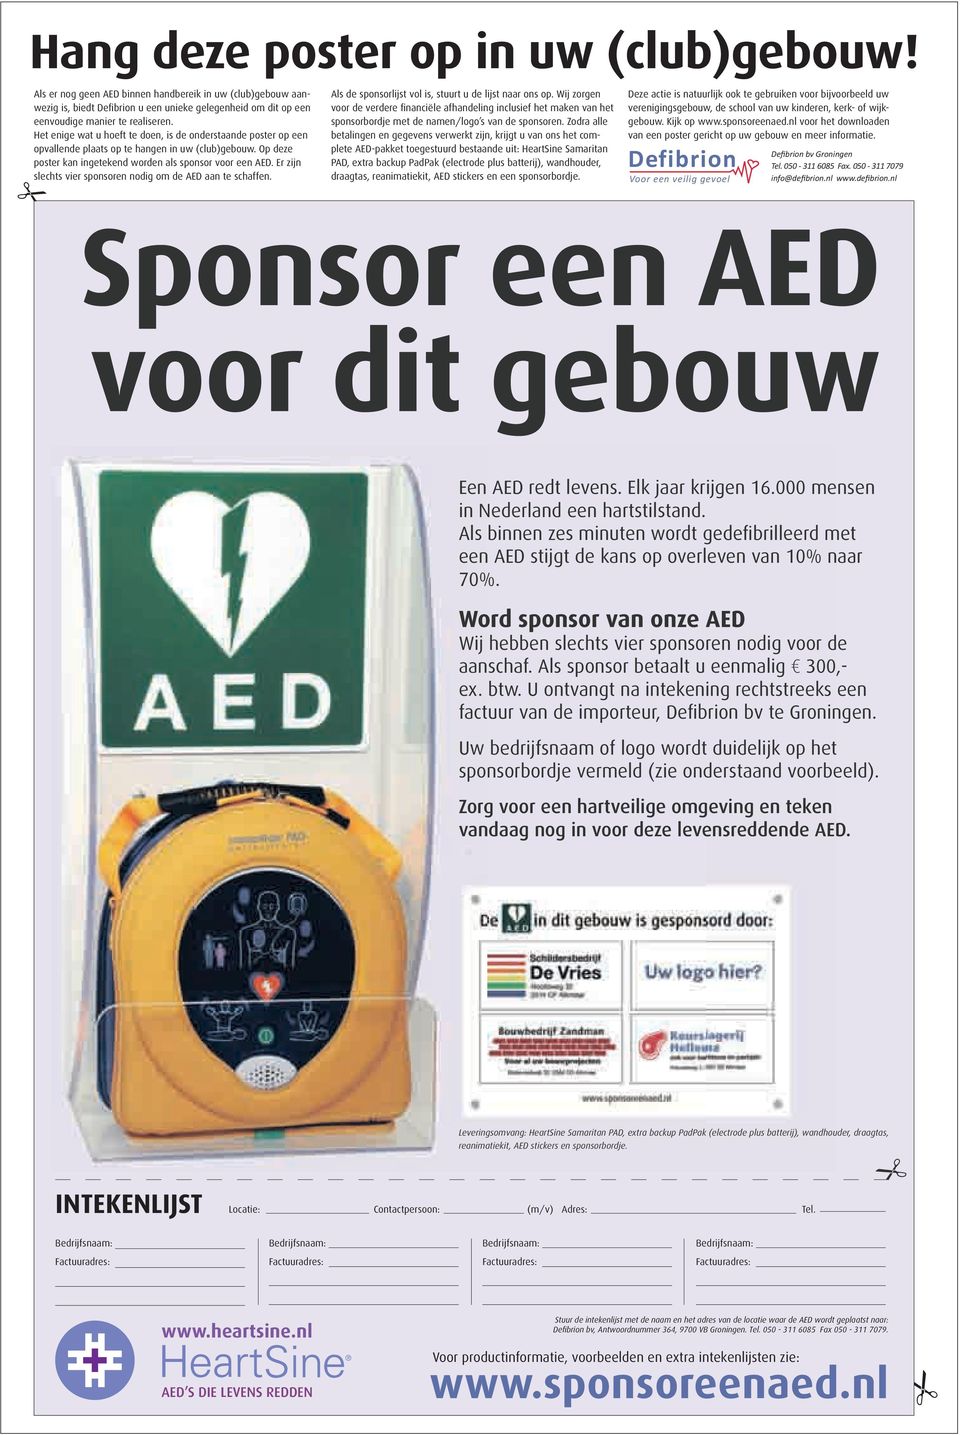 Er zijn slchts vir sponsorn nodig om d AED aan t schaffn. Als d sponsorlijst vol is, stuurt u d lijst naar ons op.